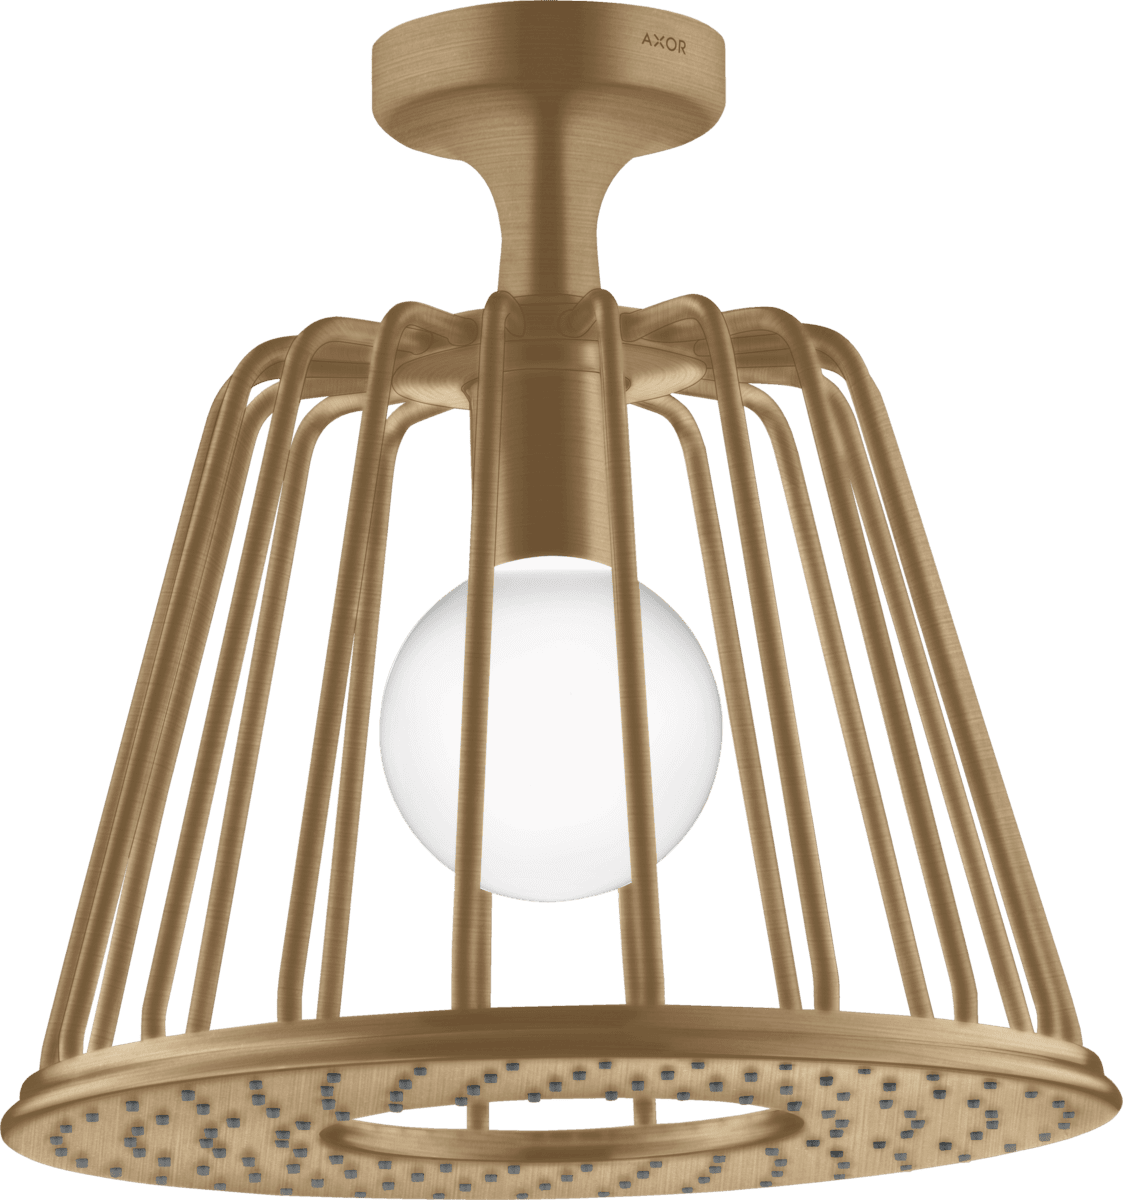 HANSGROHE AXOR LampShower/Nendo LampShower 275 1jet tavan bağlantılı #26032140 - Mat Bronz resmi